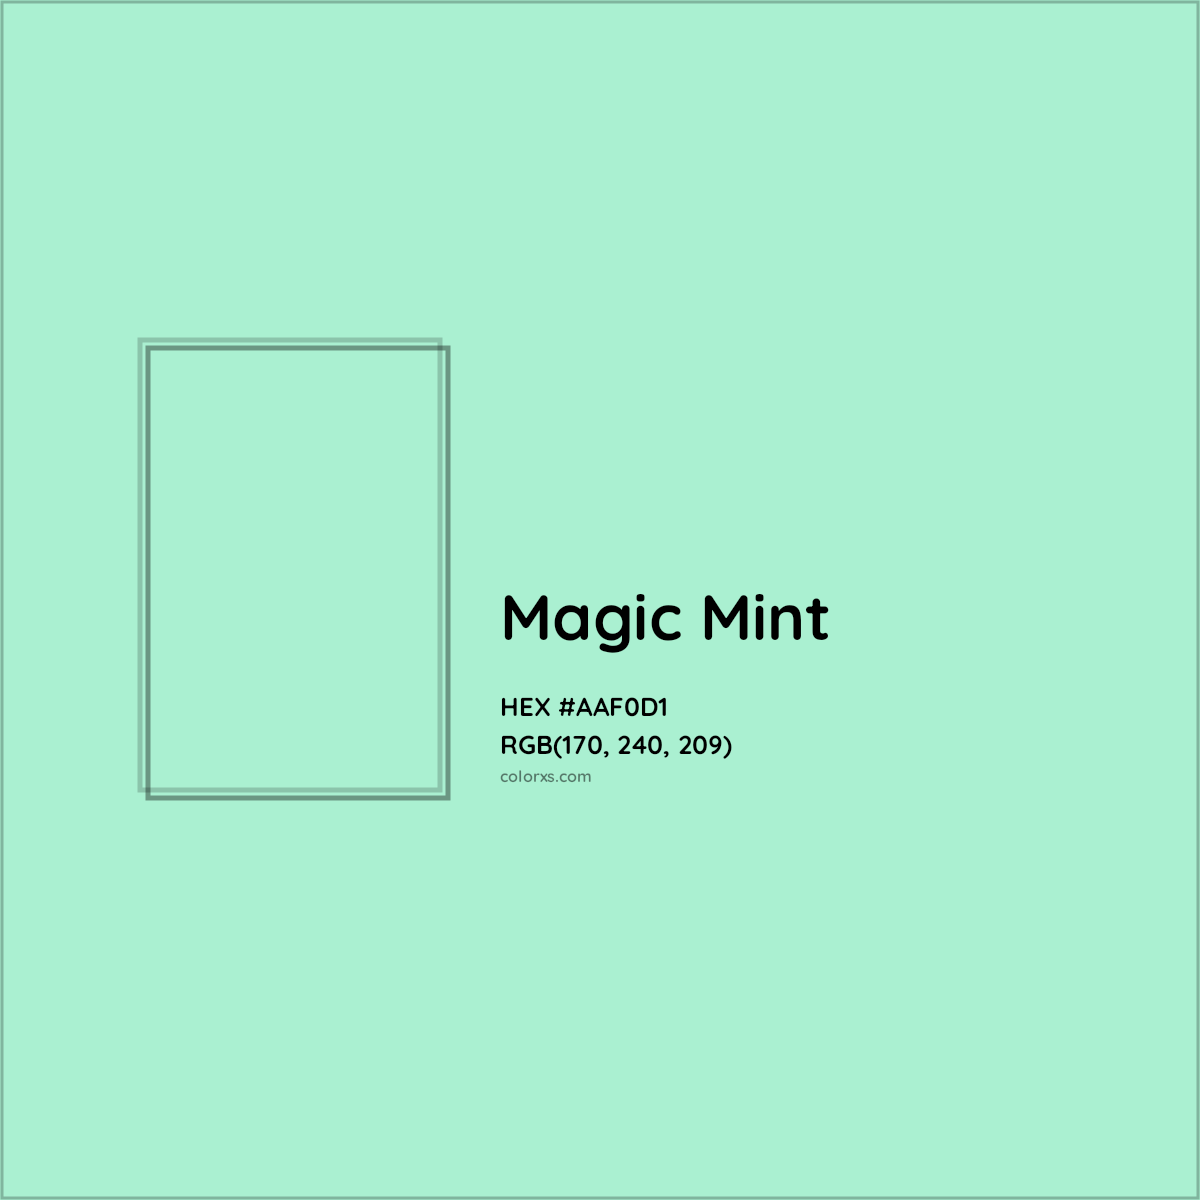 HEX #AAF0D1 Magic Mint Color Crayola Crayons - Color Code